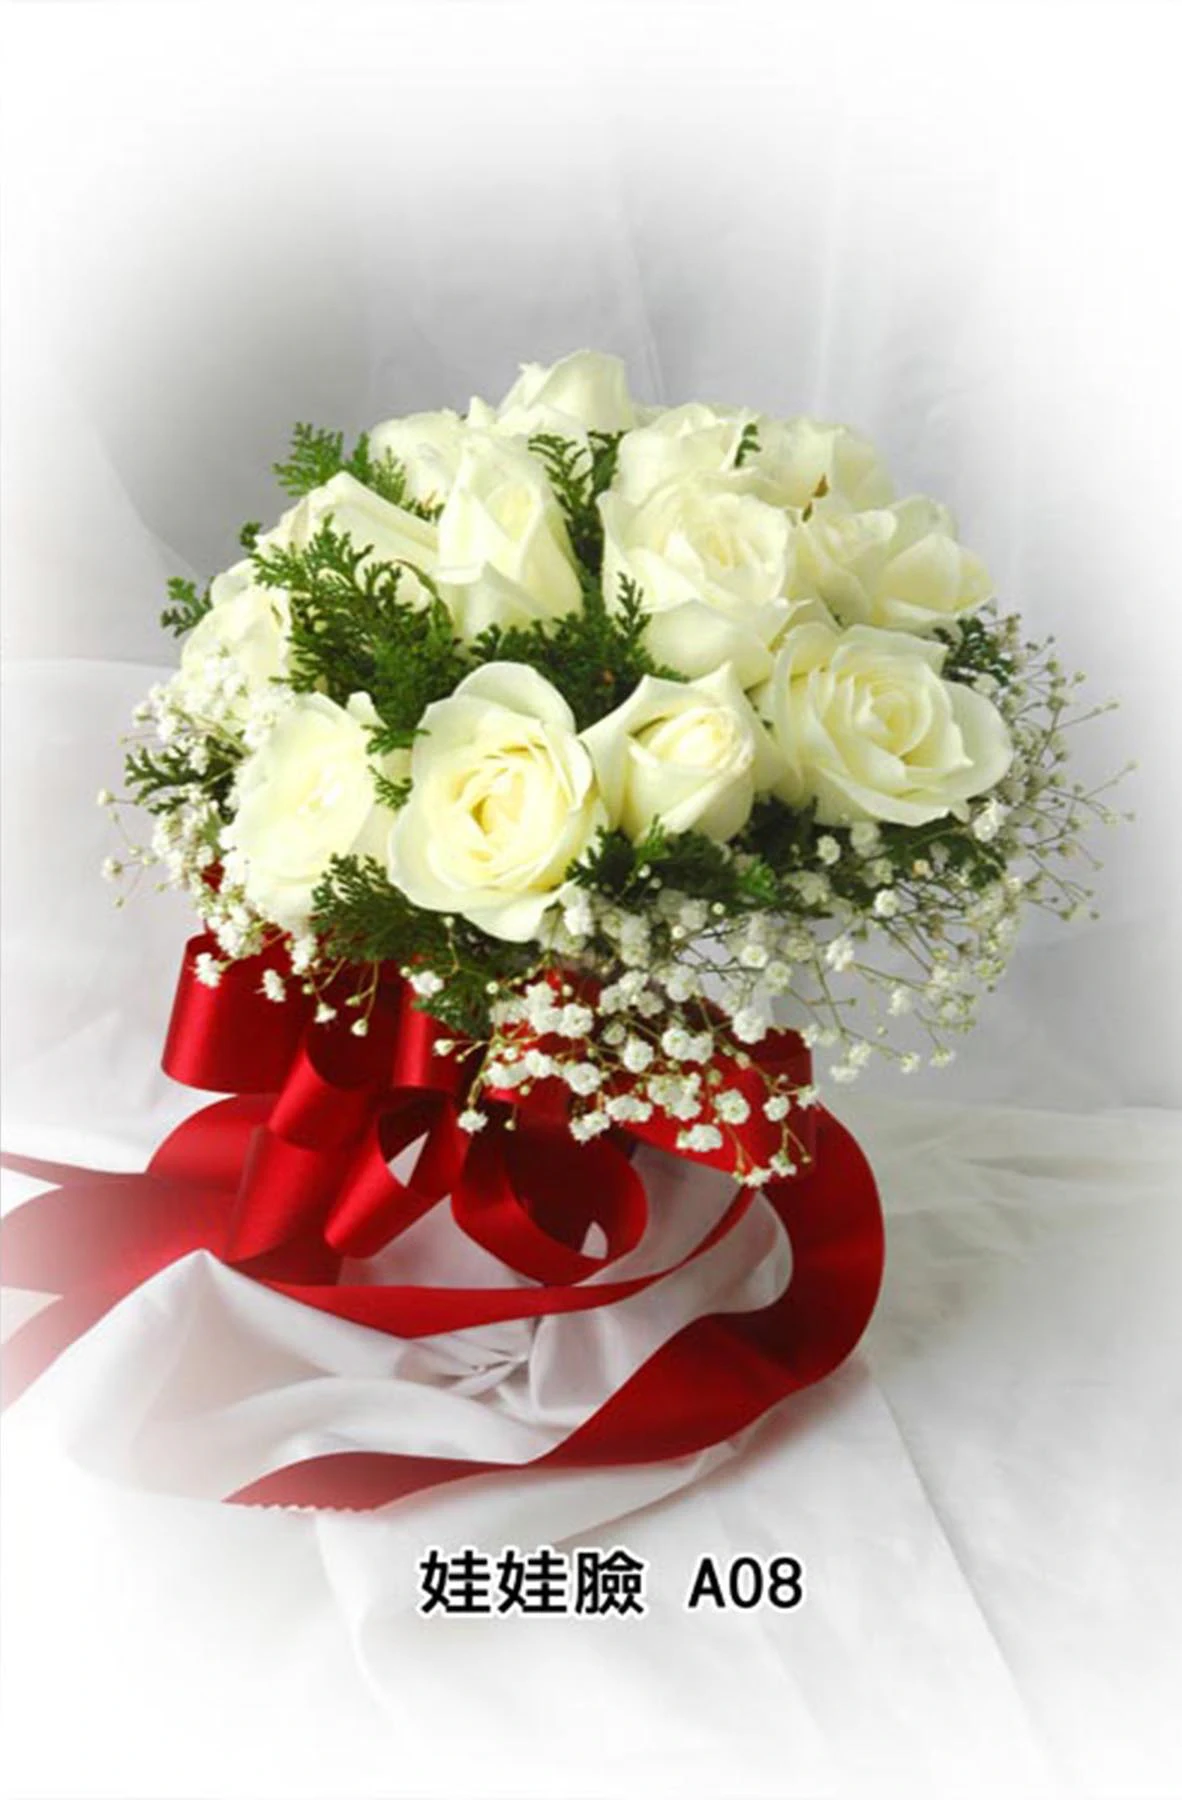 新娘捧花-花材有白玫瑰花,滿天星,紅緞帶,花束型